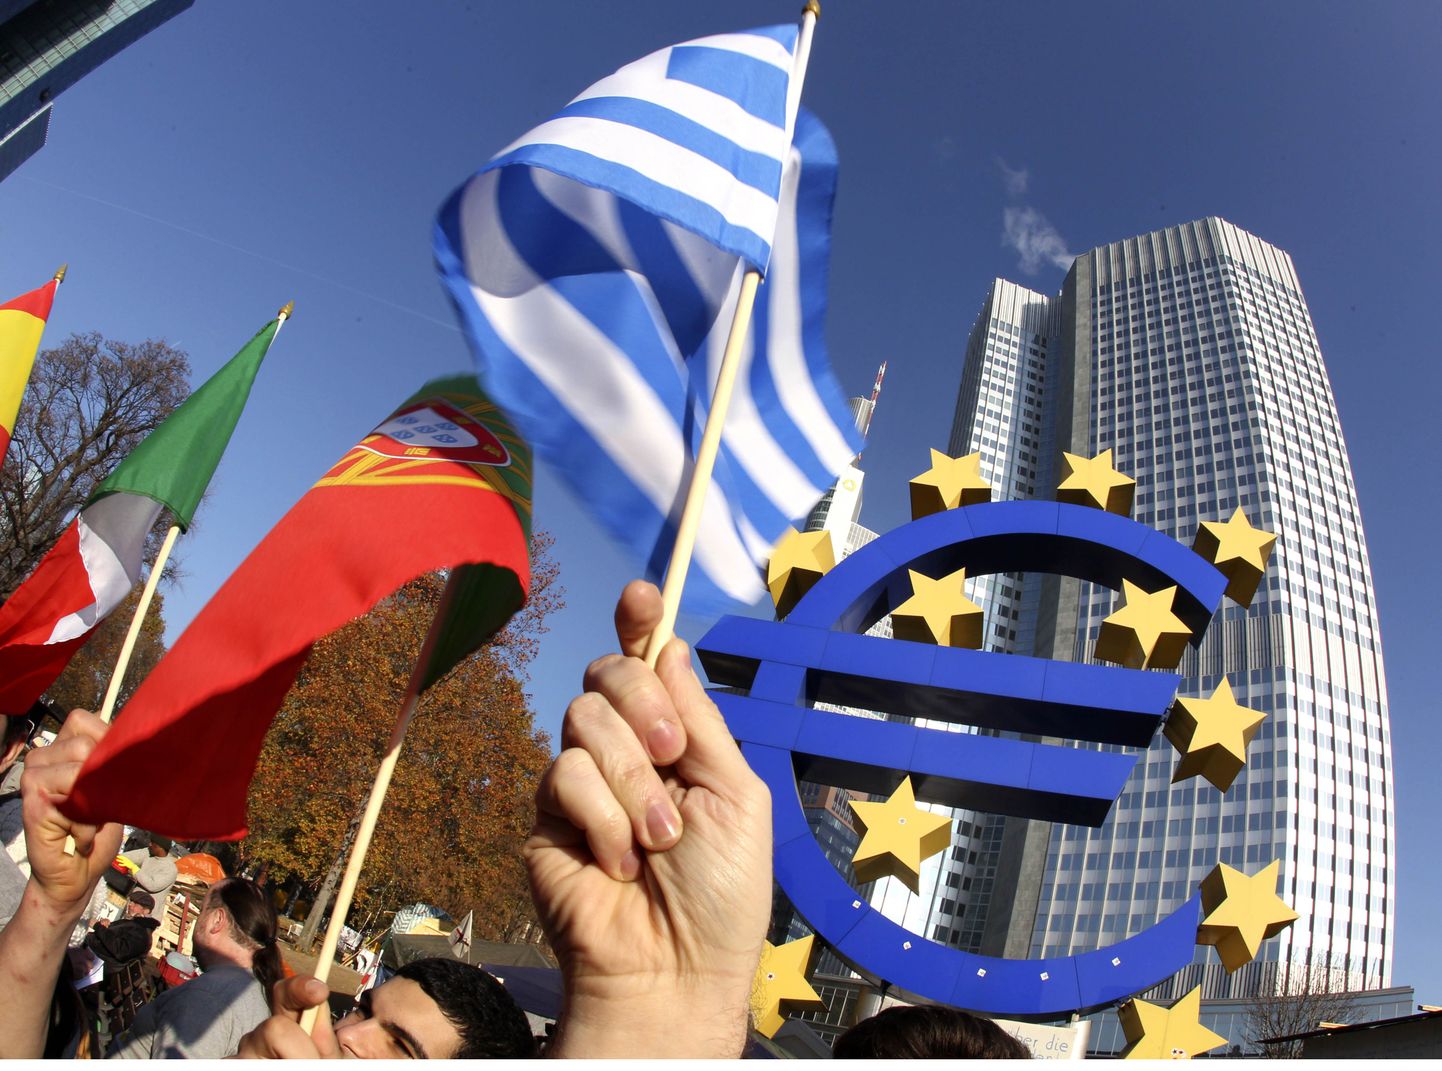 Флаги Греции и Португалии на фоне символа евро и здания ЕЦБ.